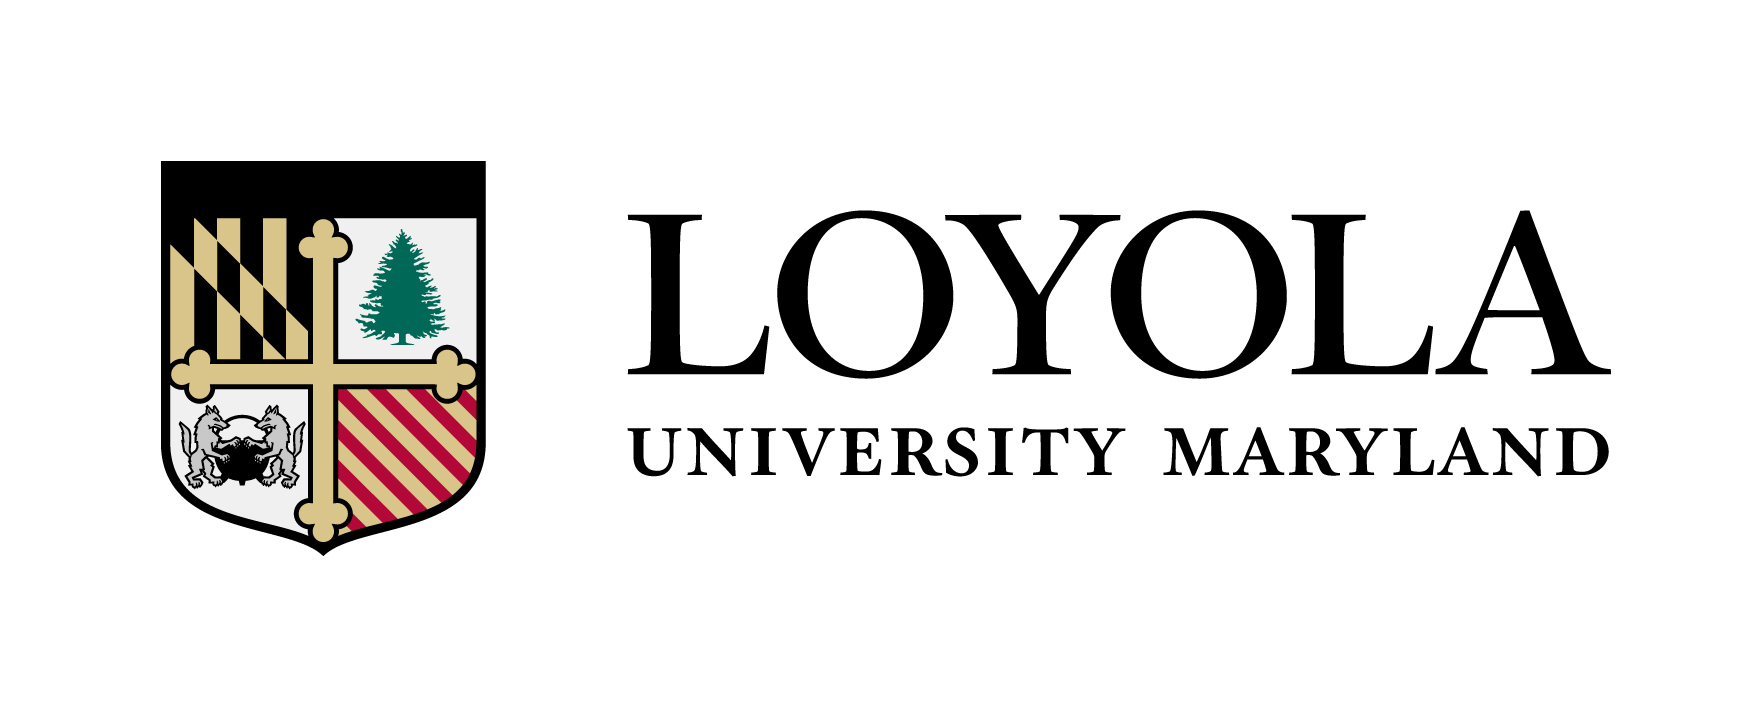 Loyola_University_Maryland_Banner